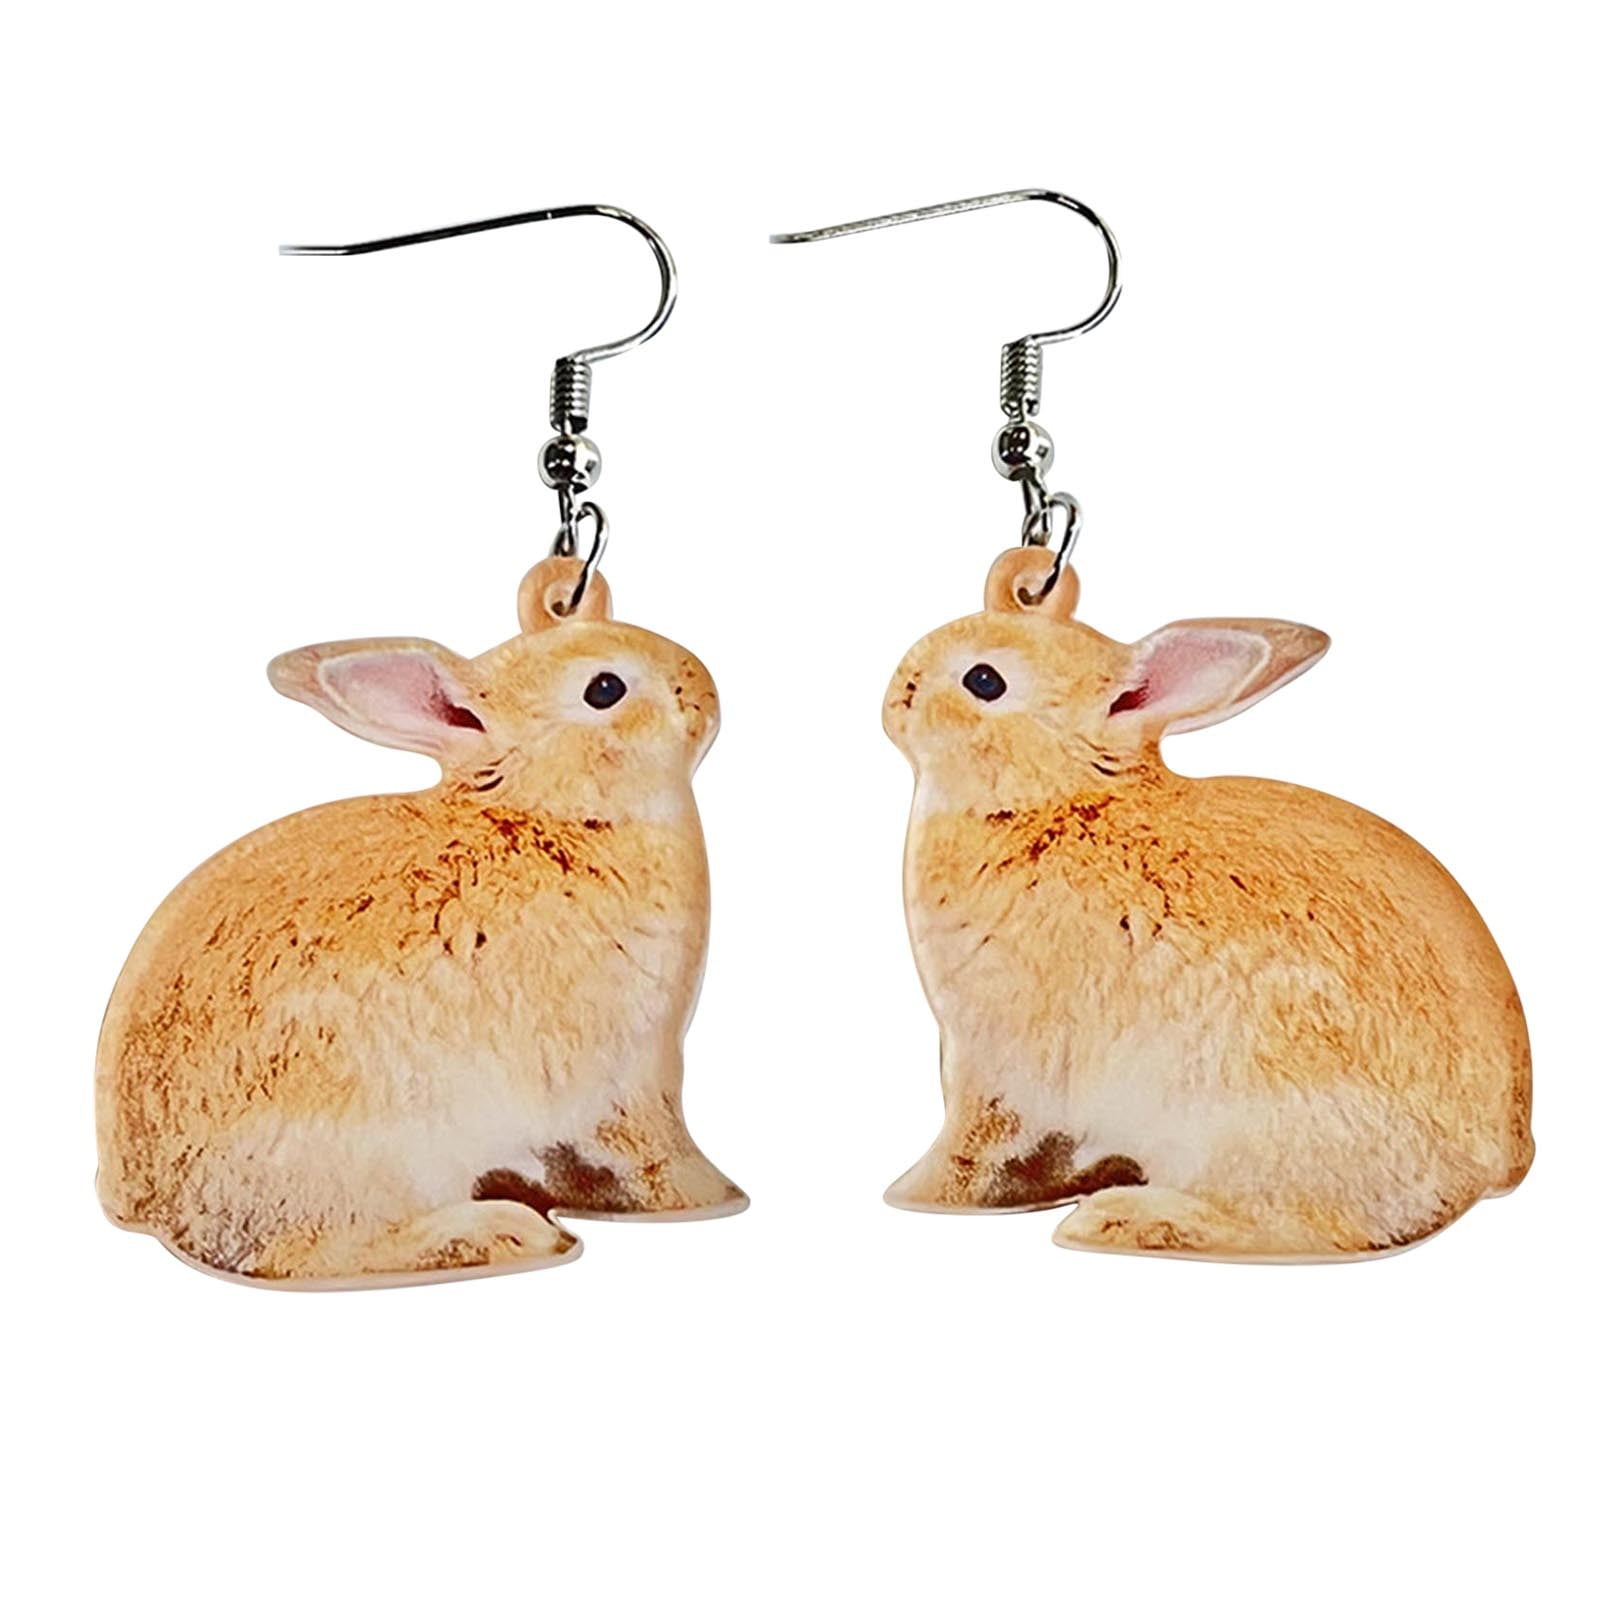 Buy Easter Earrings, Easter Basket Earrings, Spring Earrings, Spring  Accessories, Easter Earrings, Easter Accessories Online in India - Etsy